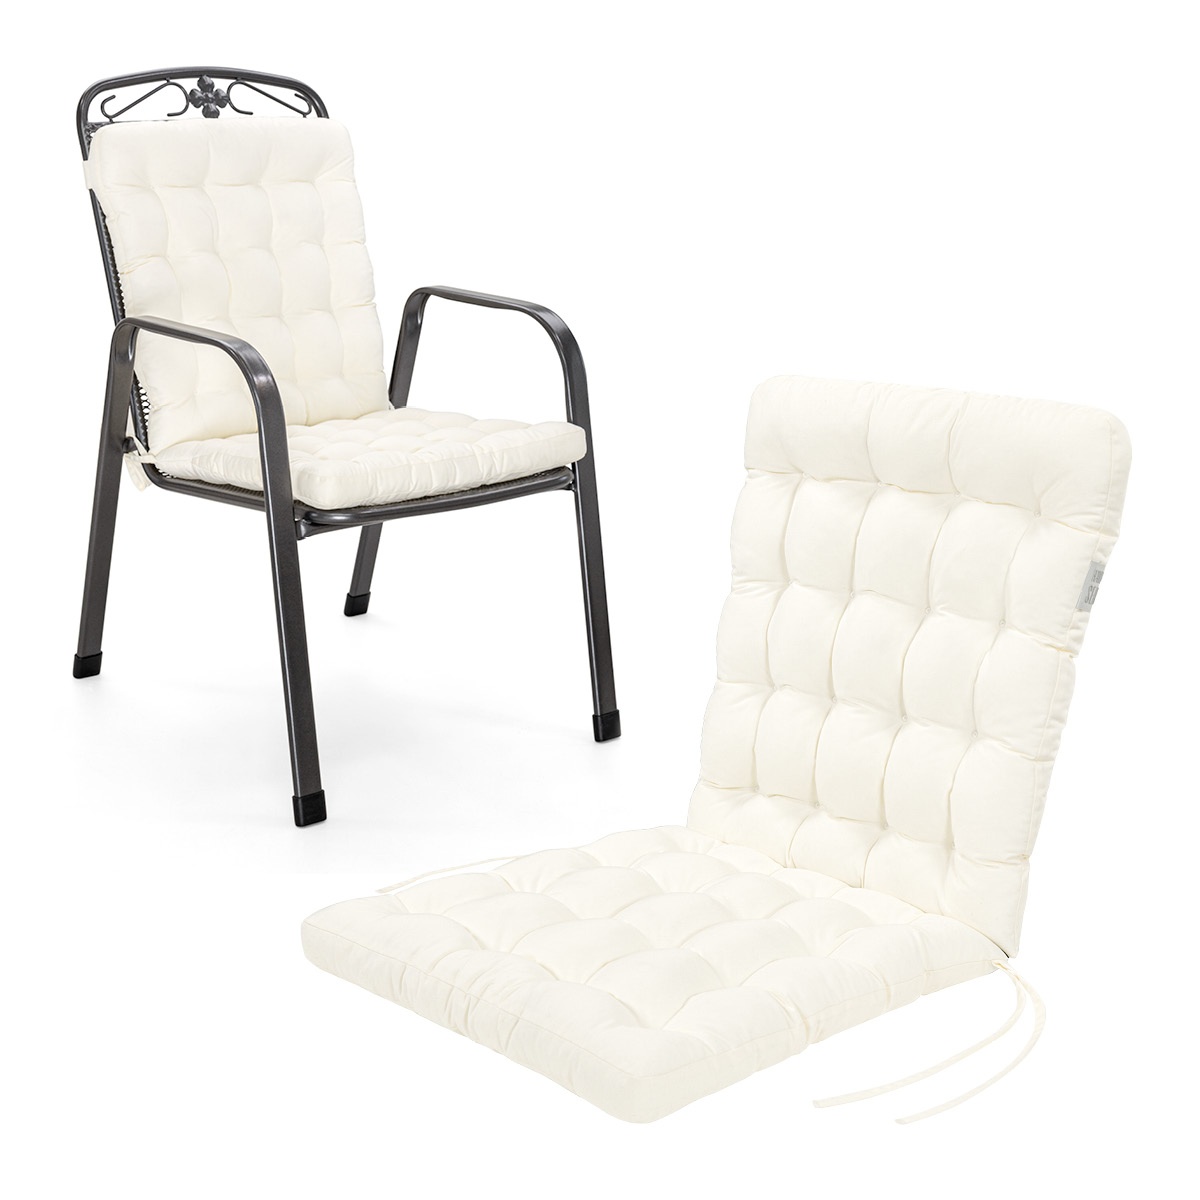 Cuscino per sedia con schienale basso 100x48 cm | Bianco | 1 pezzo